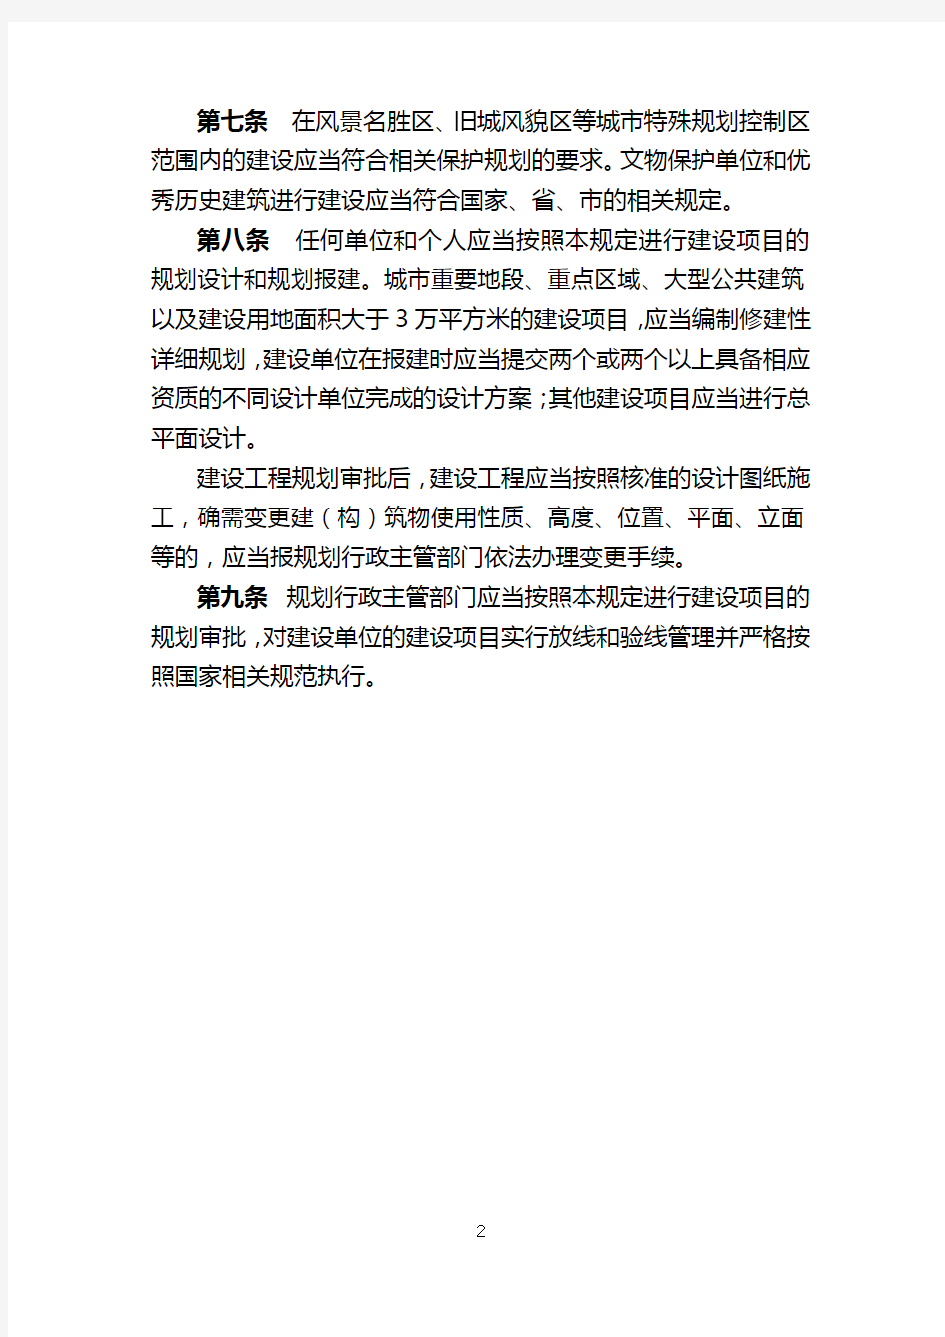 武汉市城市规划管理的相关规定